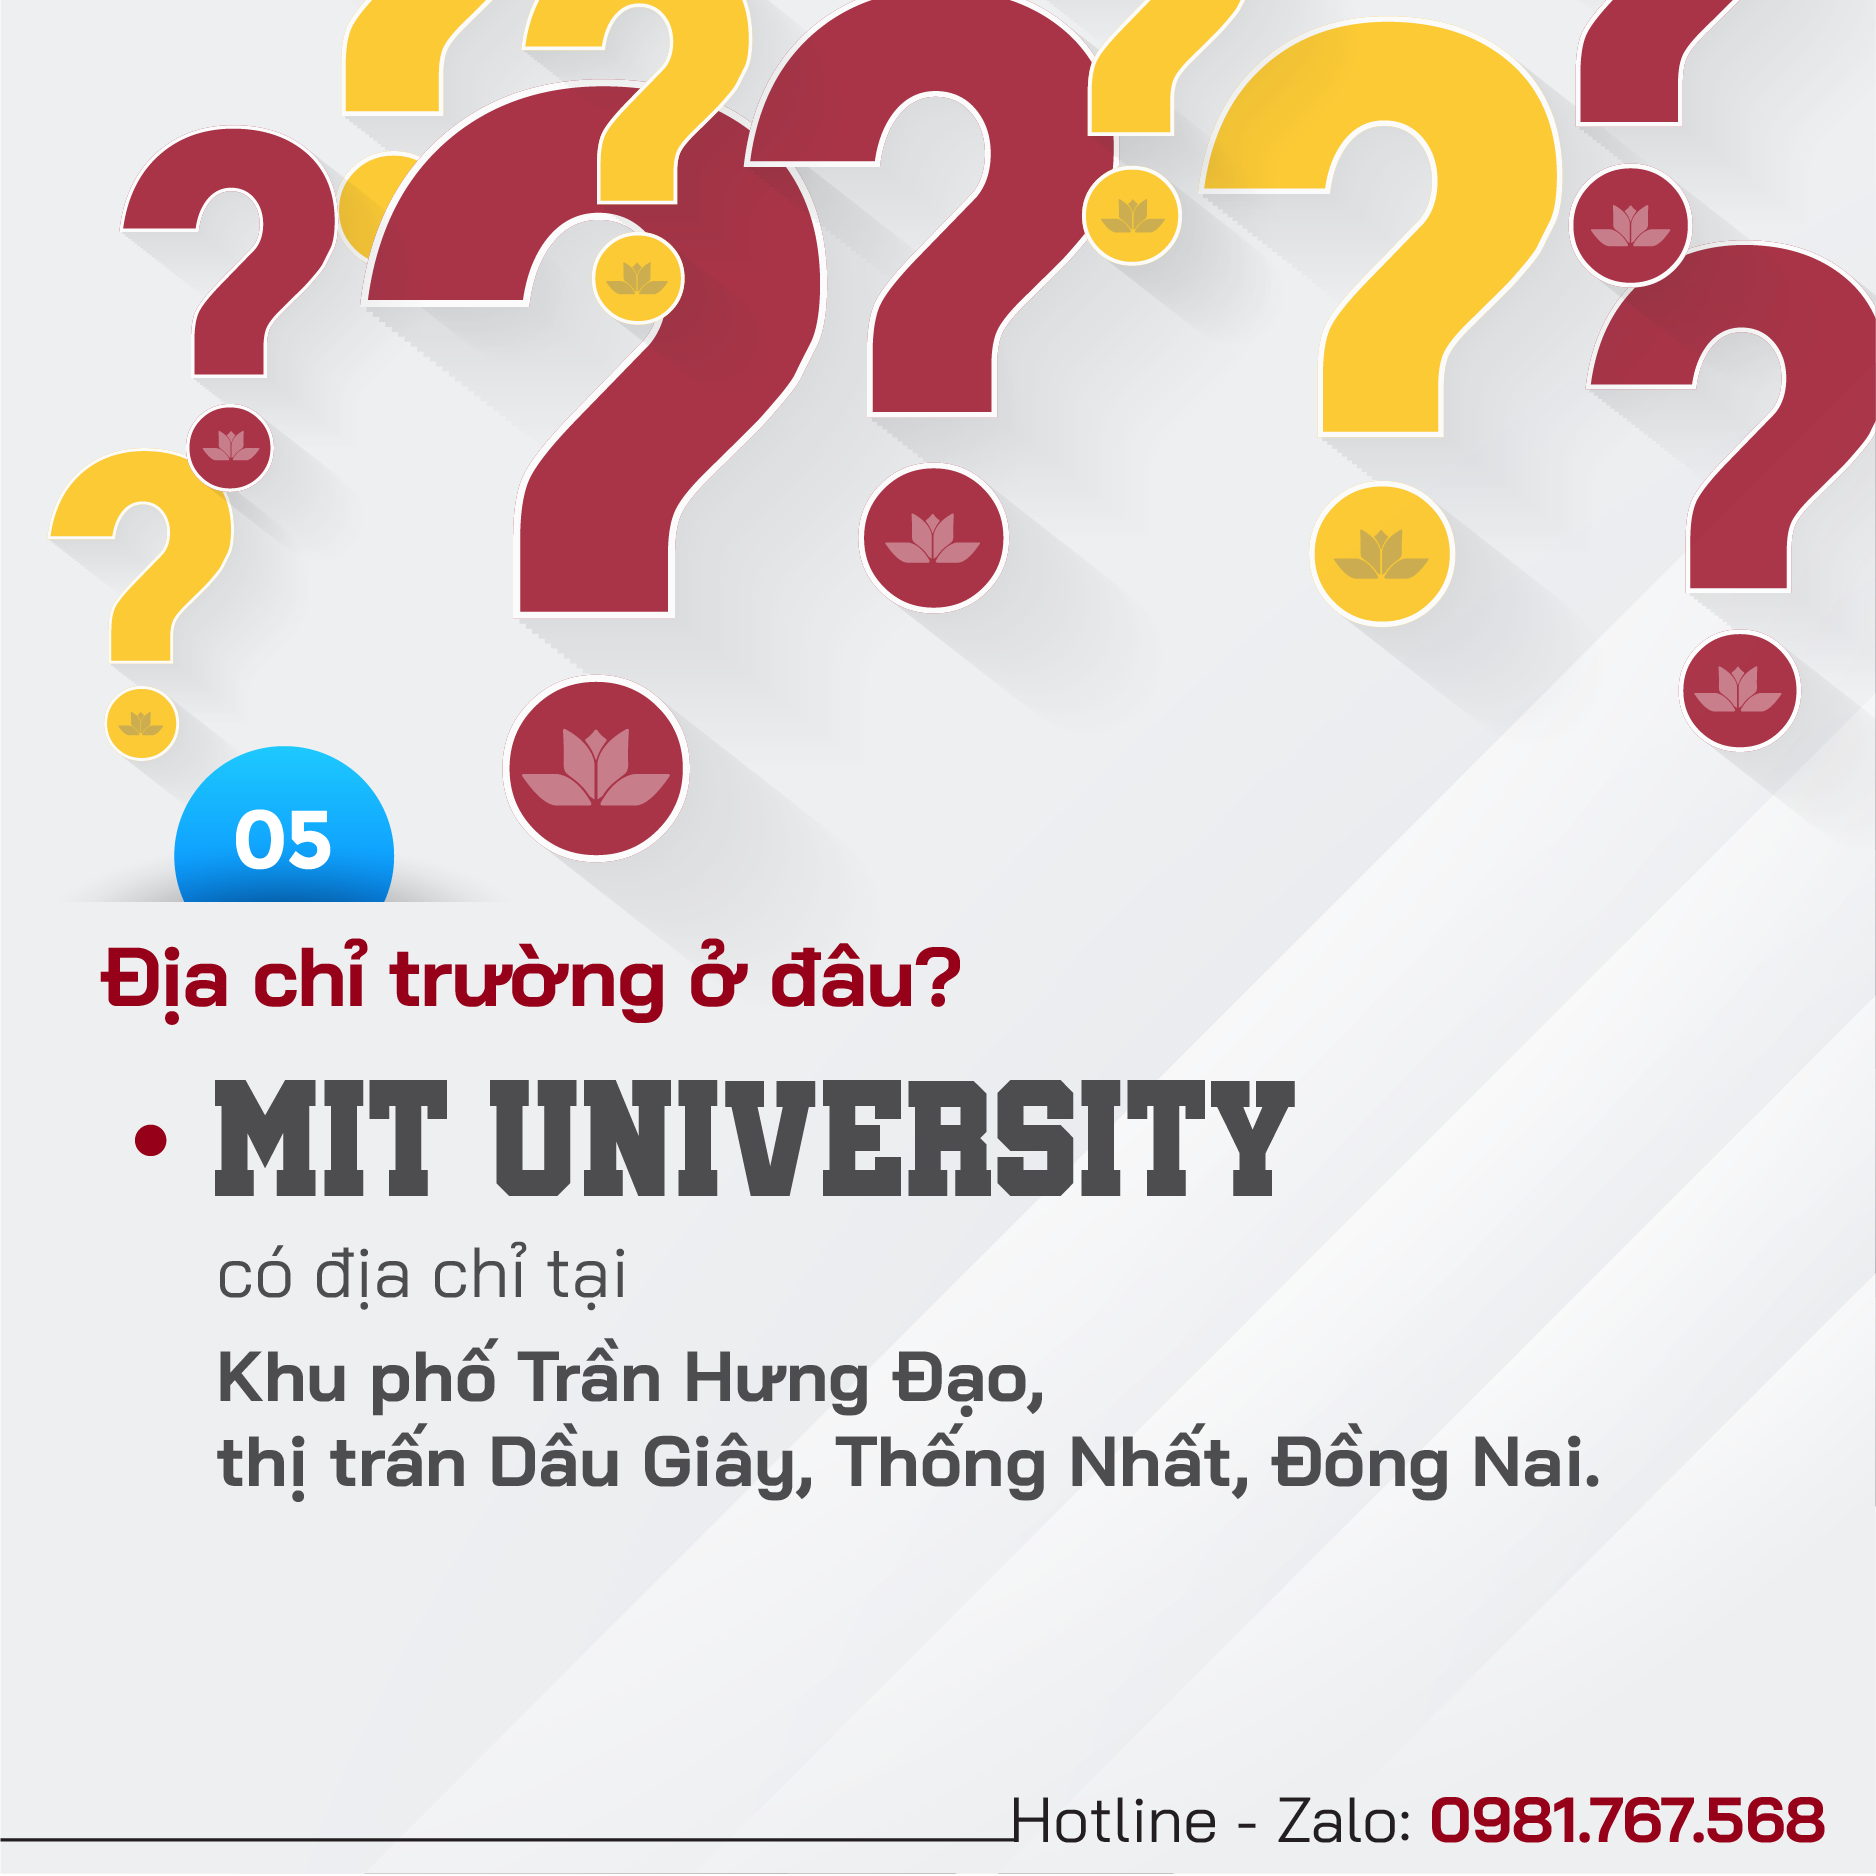 Giải đáp thắc mắc cho thí sinh khi chọn xét tuyển vào MIT University